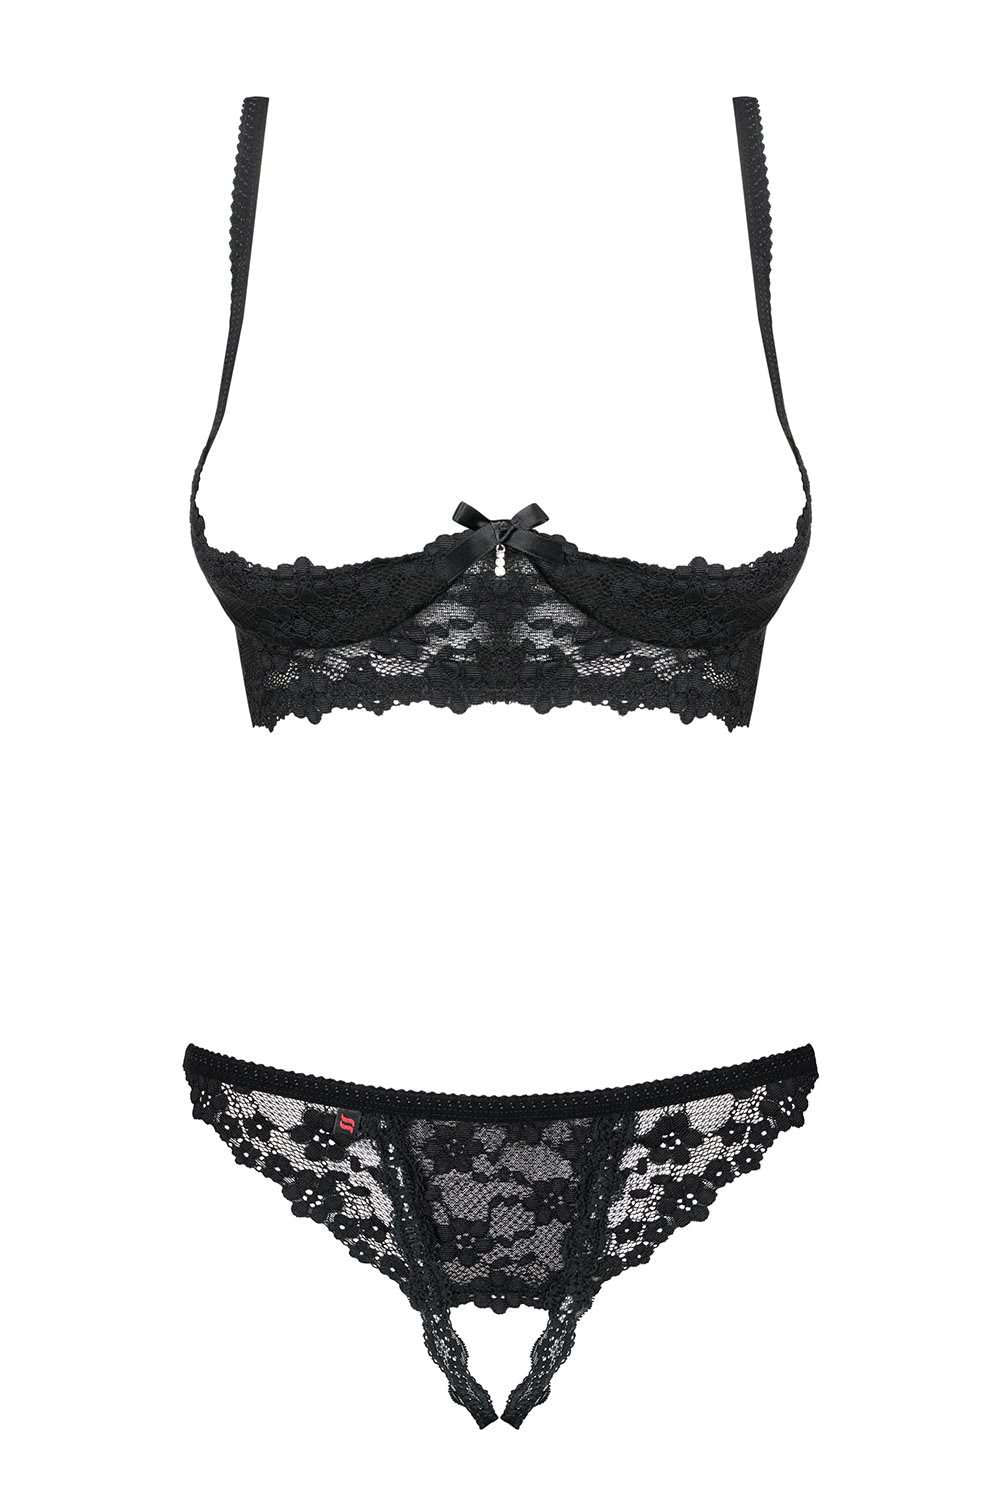 black lace crotchless lingerie